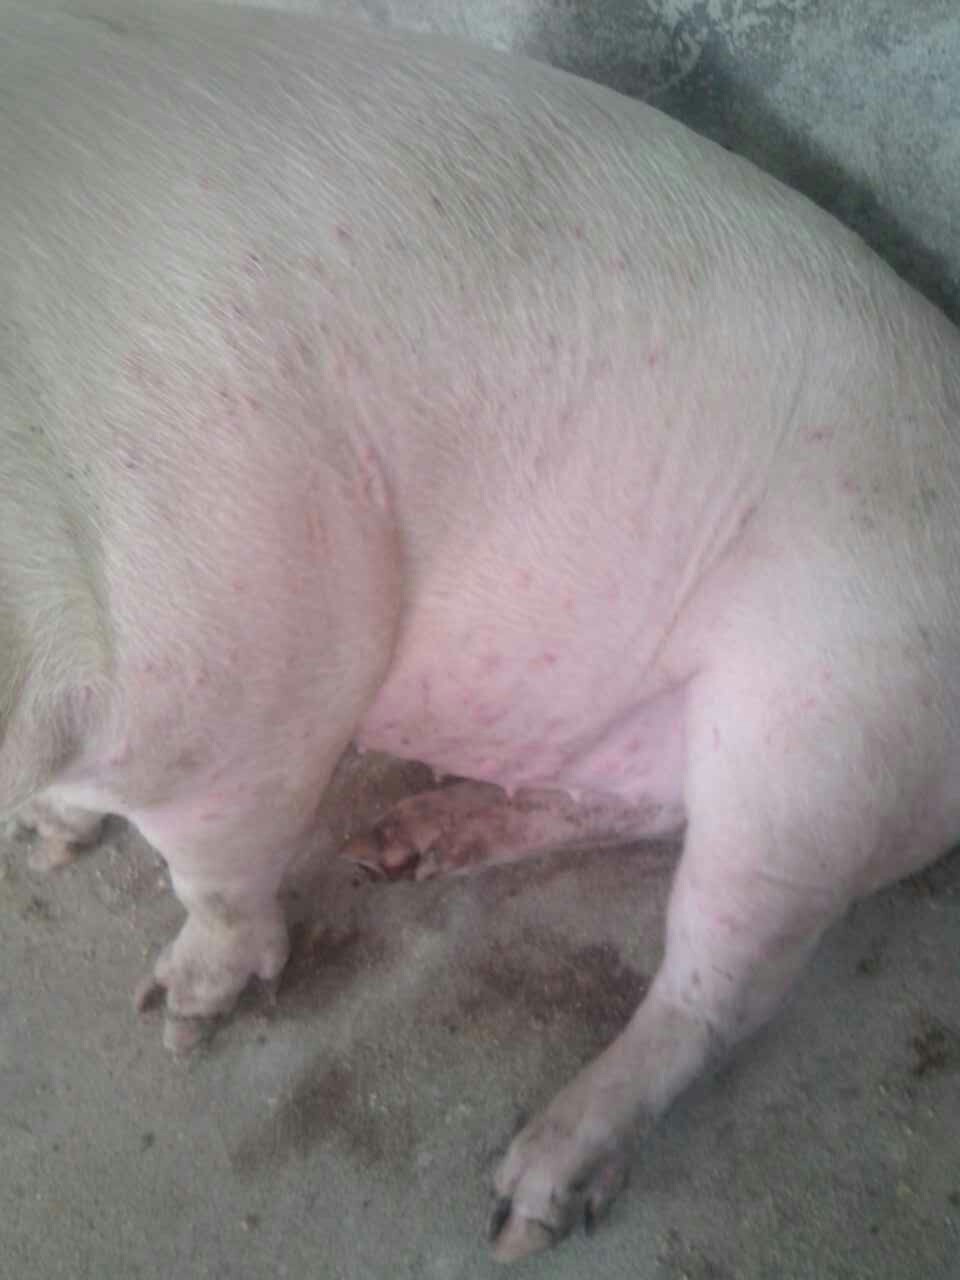 养猪发病治疗:猪的身上长了像蚊虫叮的包一样,表皮看起来发红,是什么